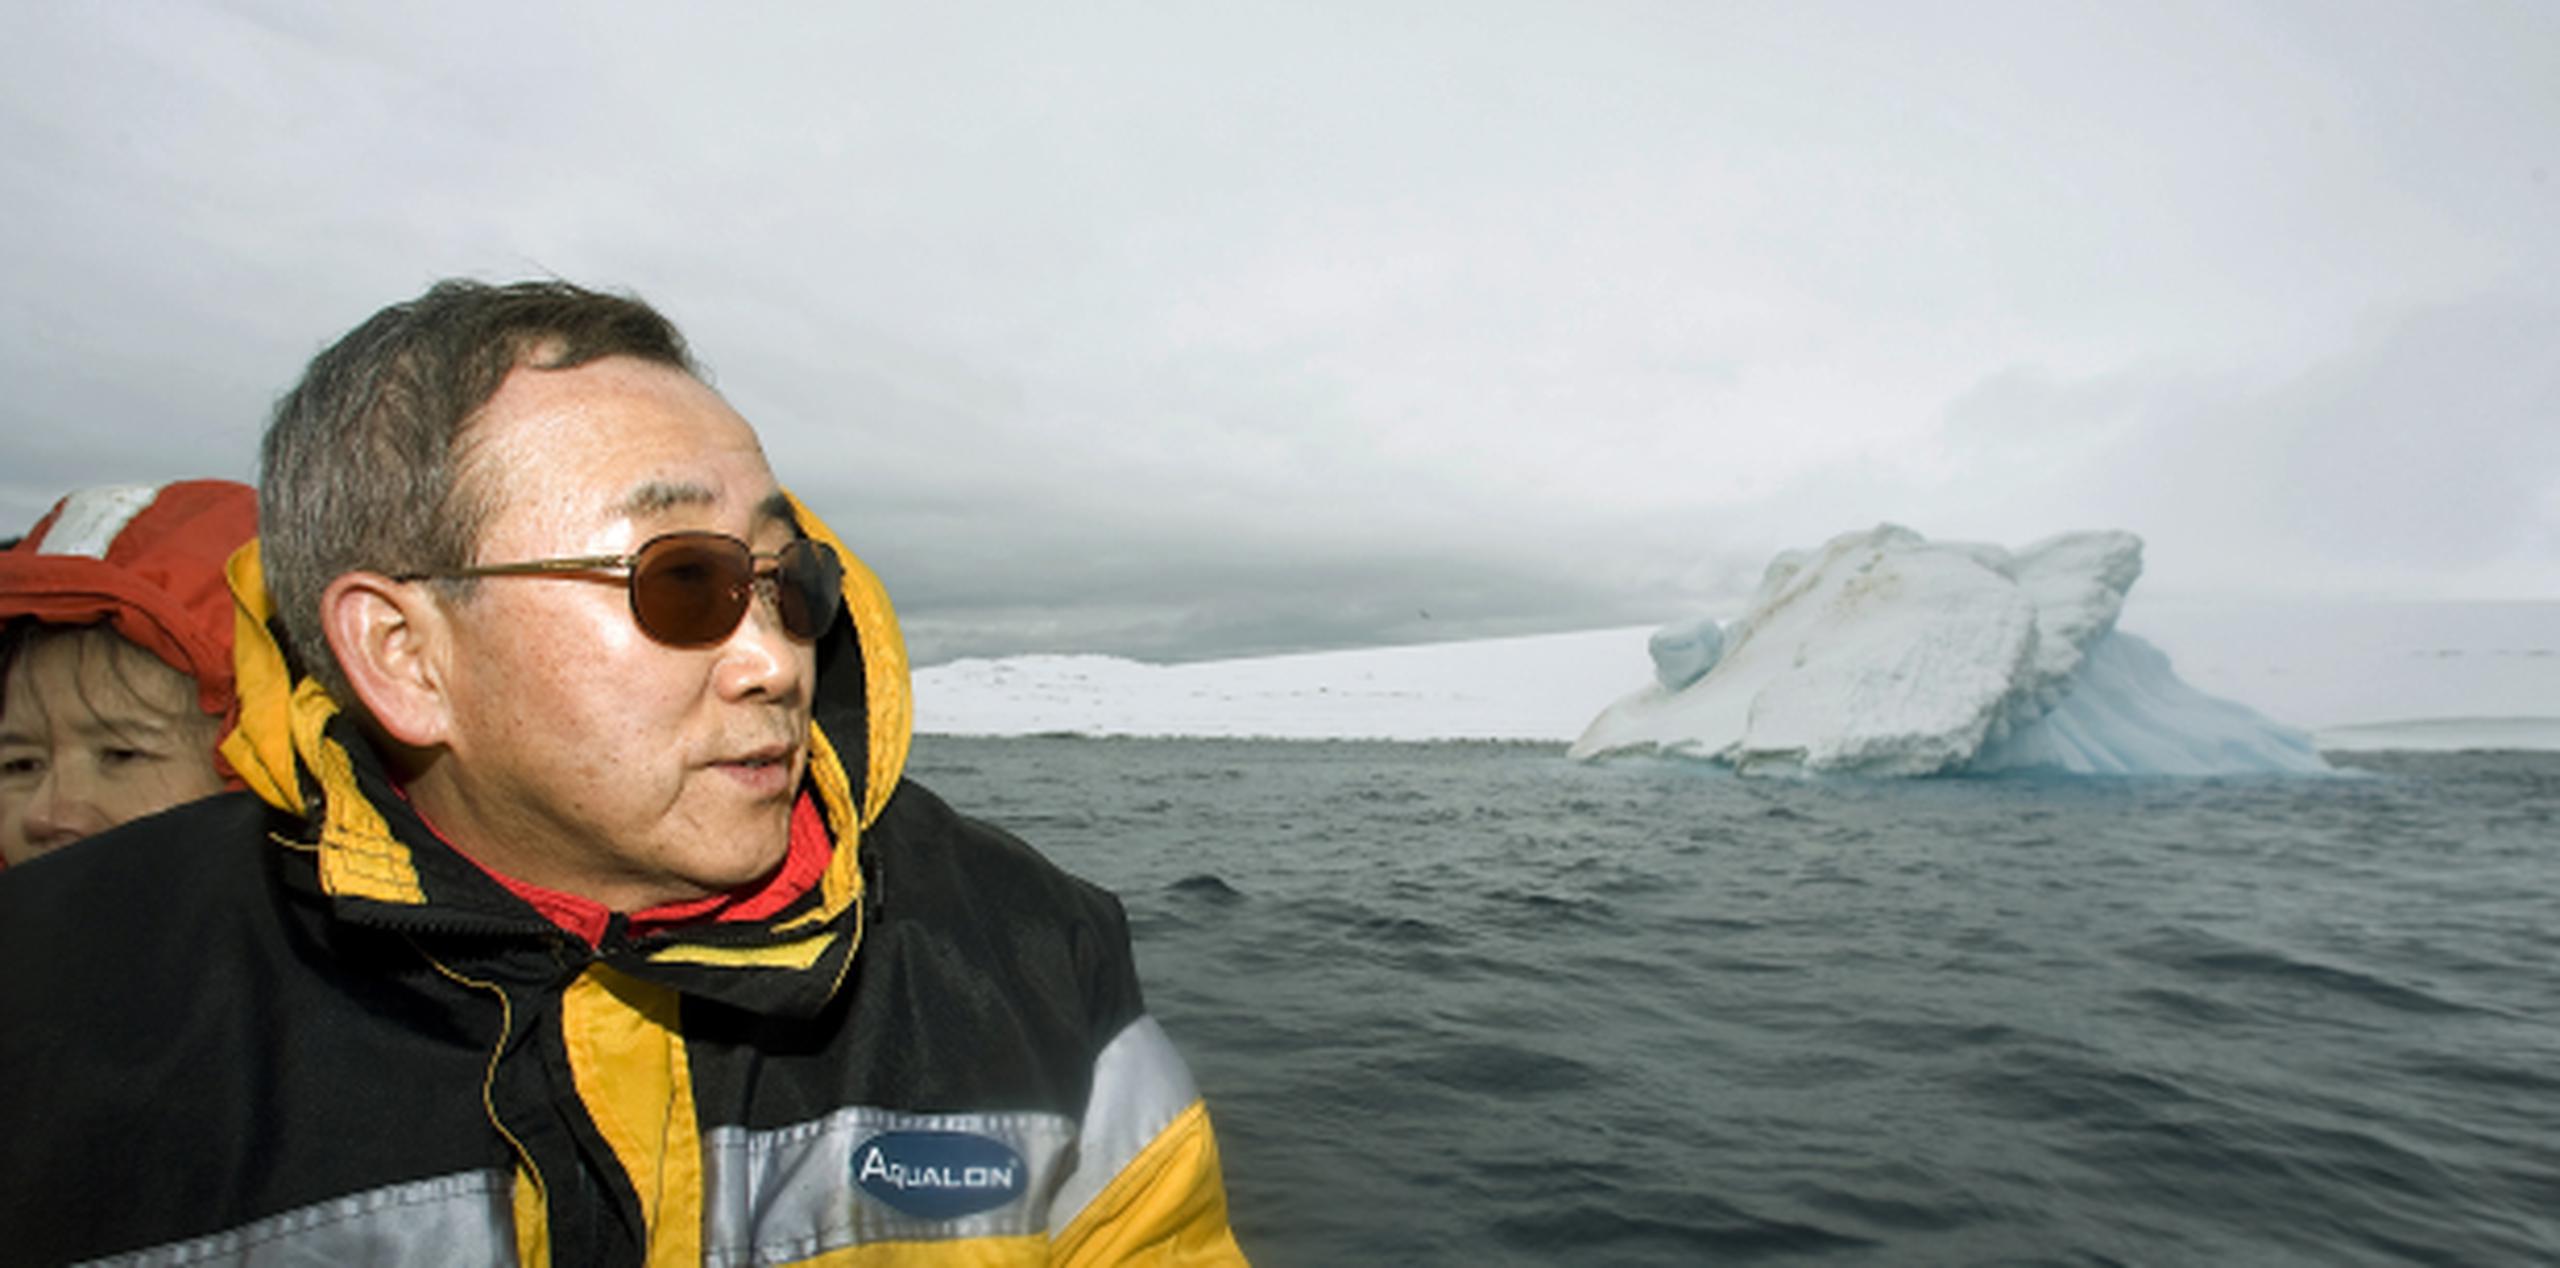 El secretario general de las Naciones Unidas, Ban Ki-moon, viajó diversos lugares del mundo -como Antártida- para combatir el cambio climático. (AP)